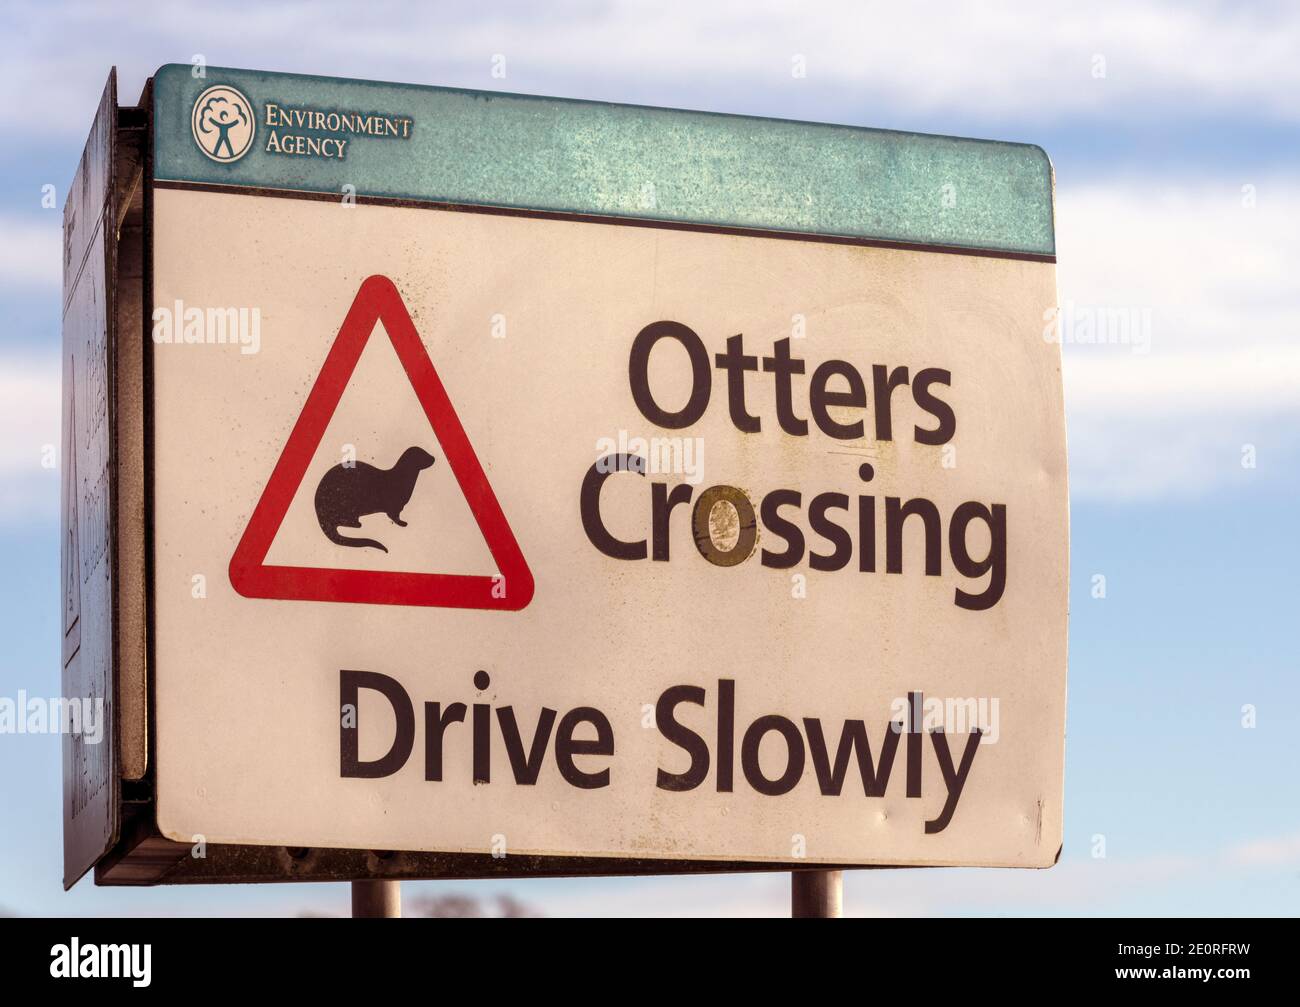 Signe inhabituel à Lymington, Hampshire, Angleterre, Royaume-Uni - Otters Crossing Drive lentement Banque D'Images